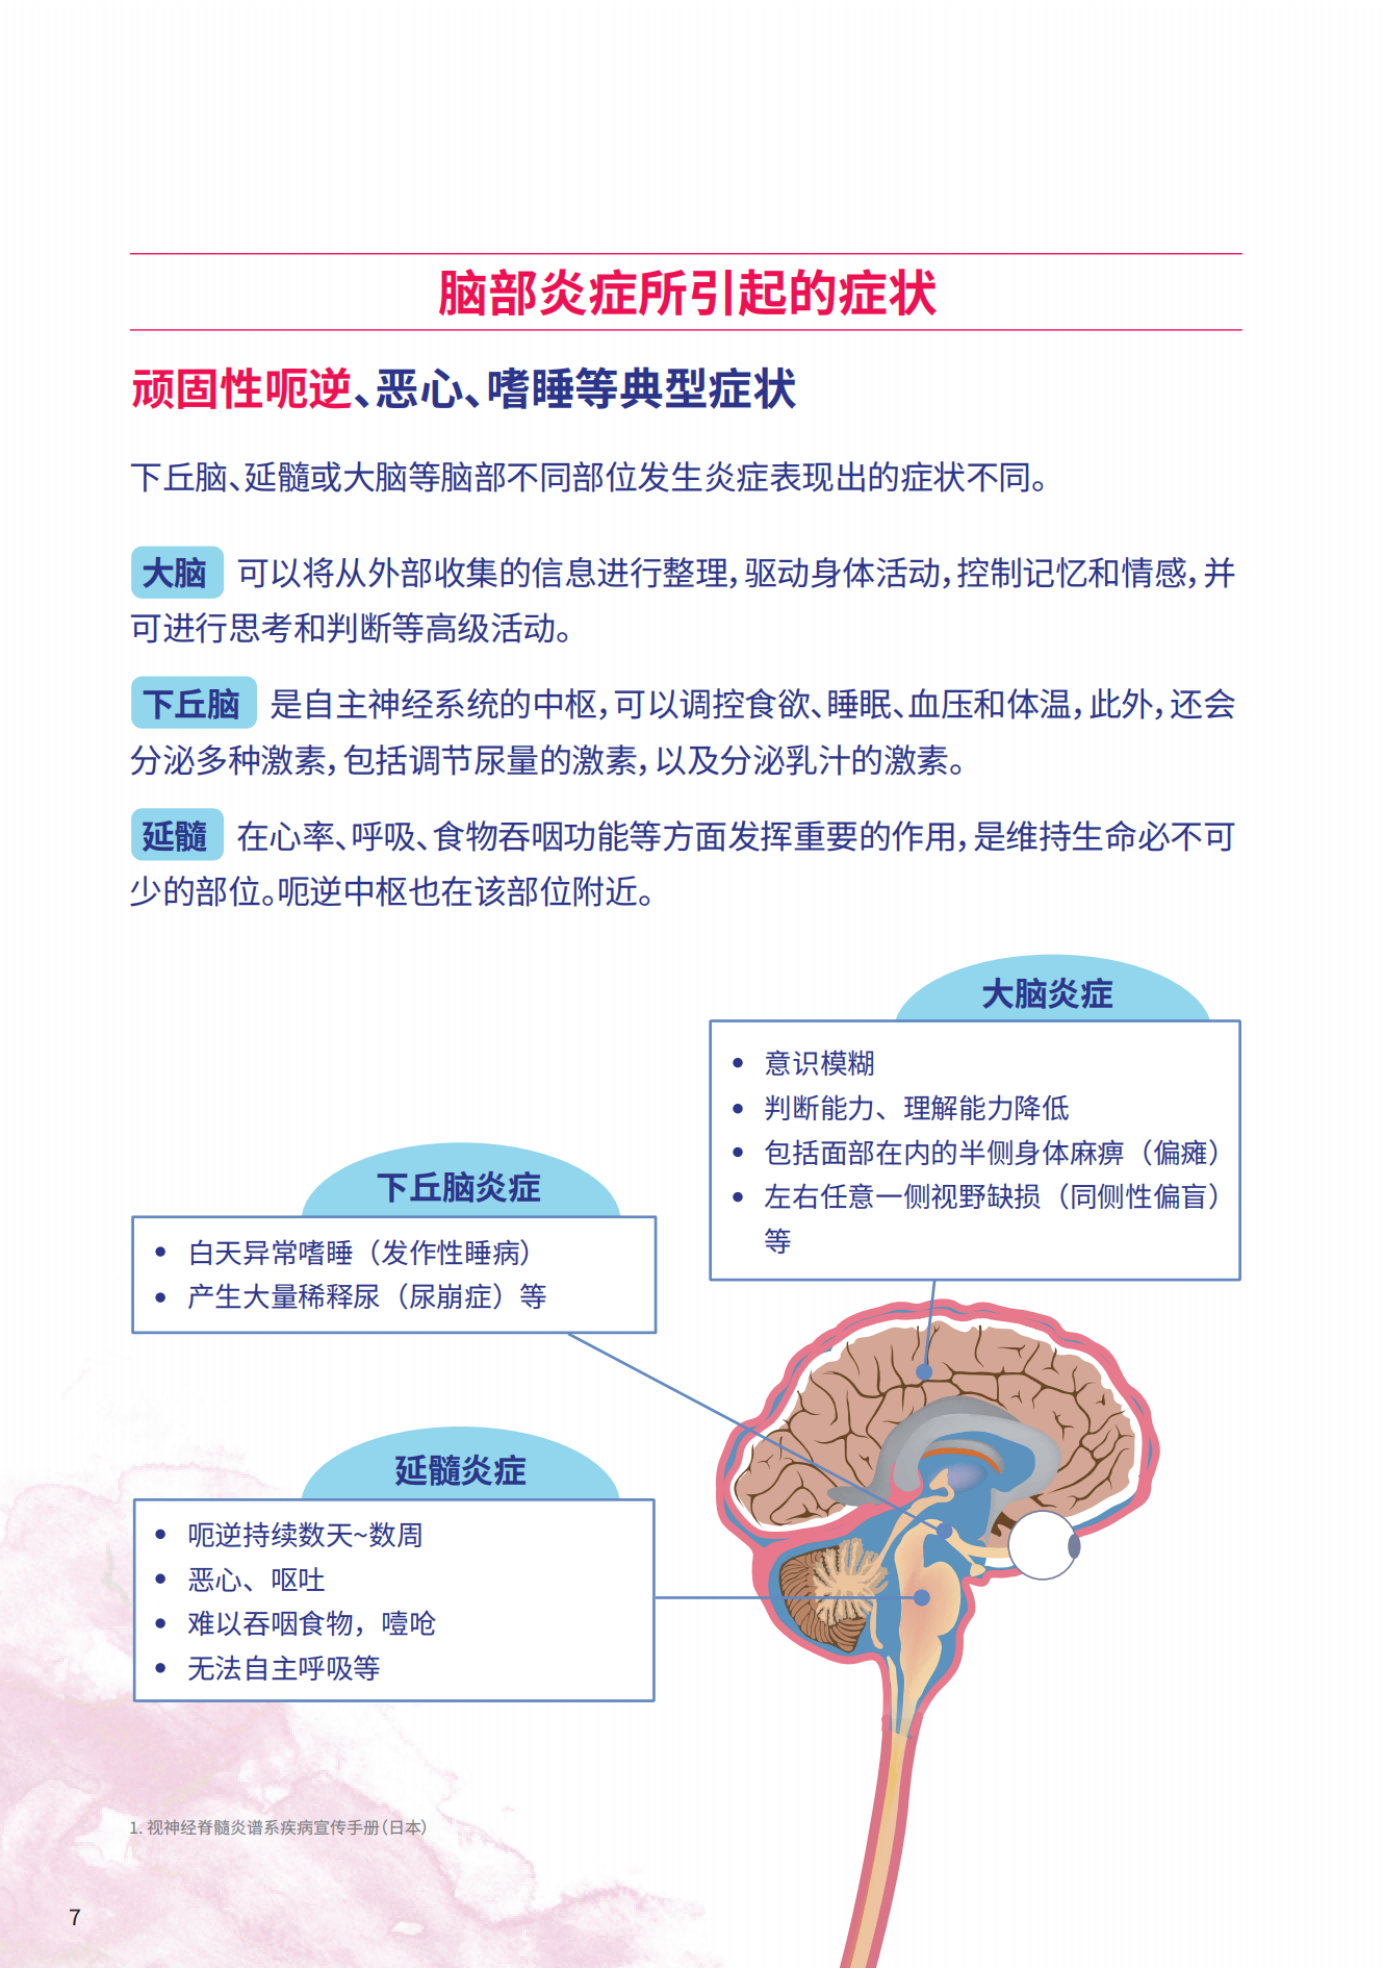 视神经脊髓炎患者知识手册_纯图版_09.png